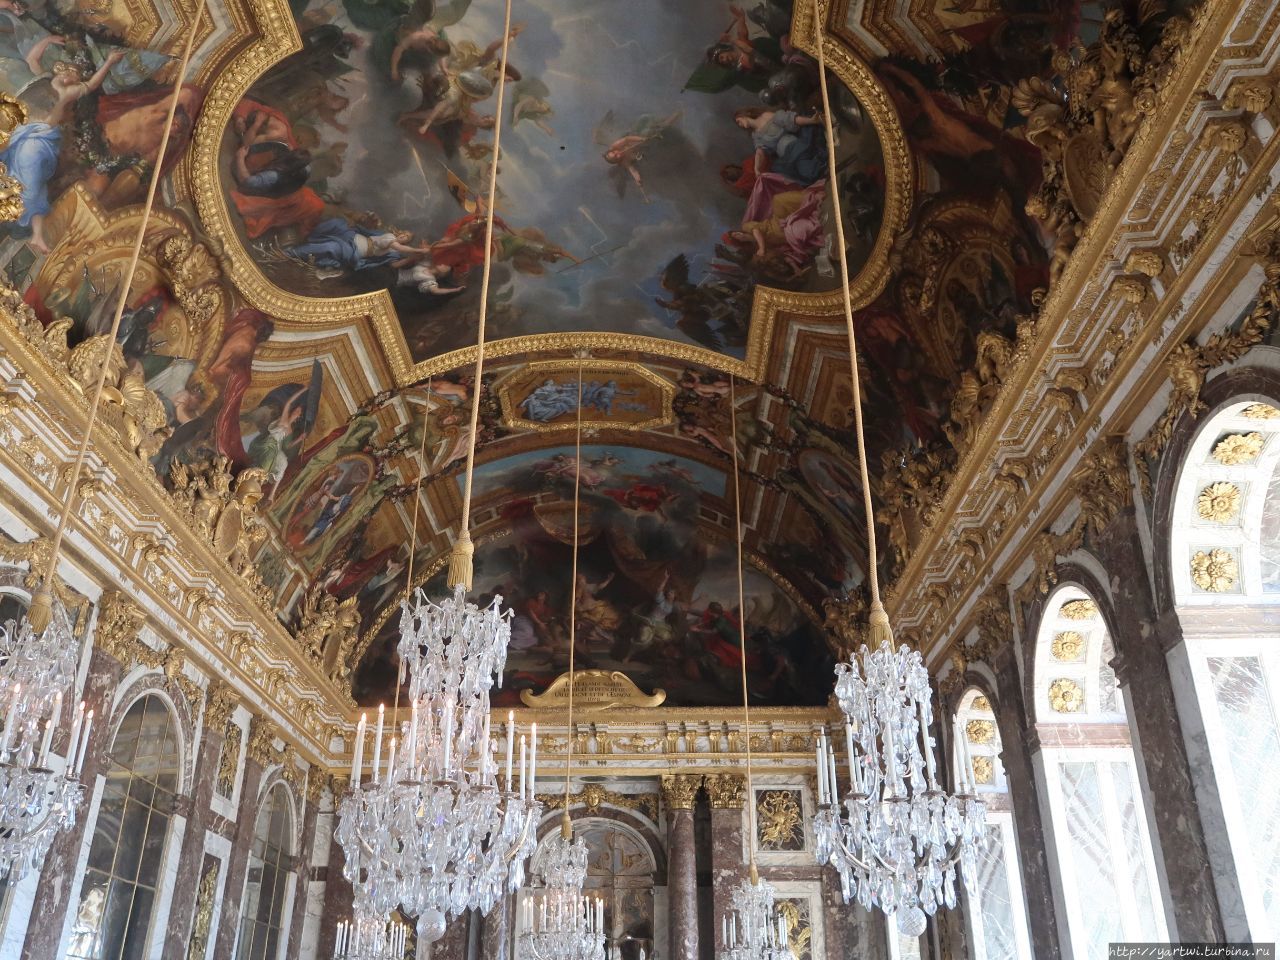 Большой дворцовый зал (пытаемся соблюдать новый европейский закон о персональных данных и не публиковать фотографии людей без их согласия, поэтому только фрагмент, который не отображает всего величия зала). Париж, Франция